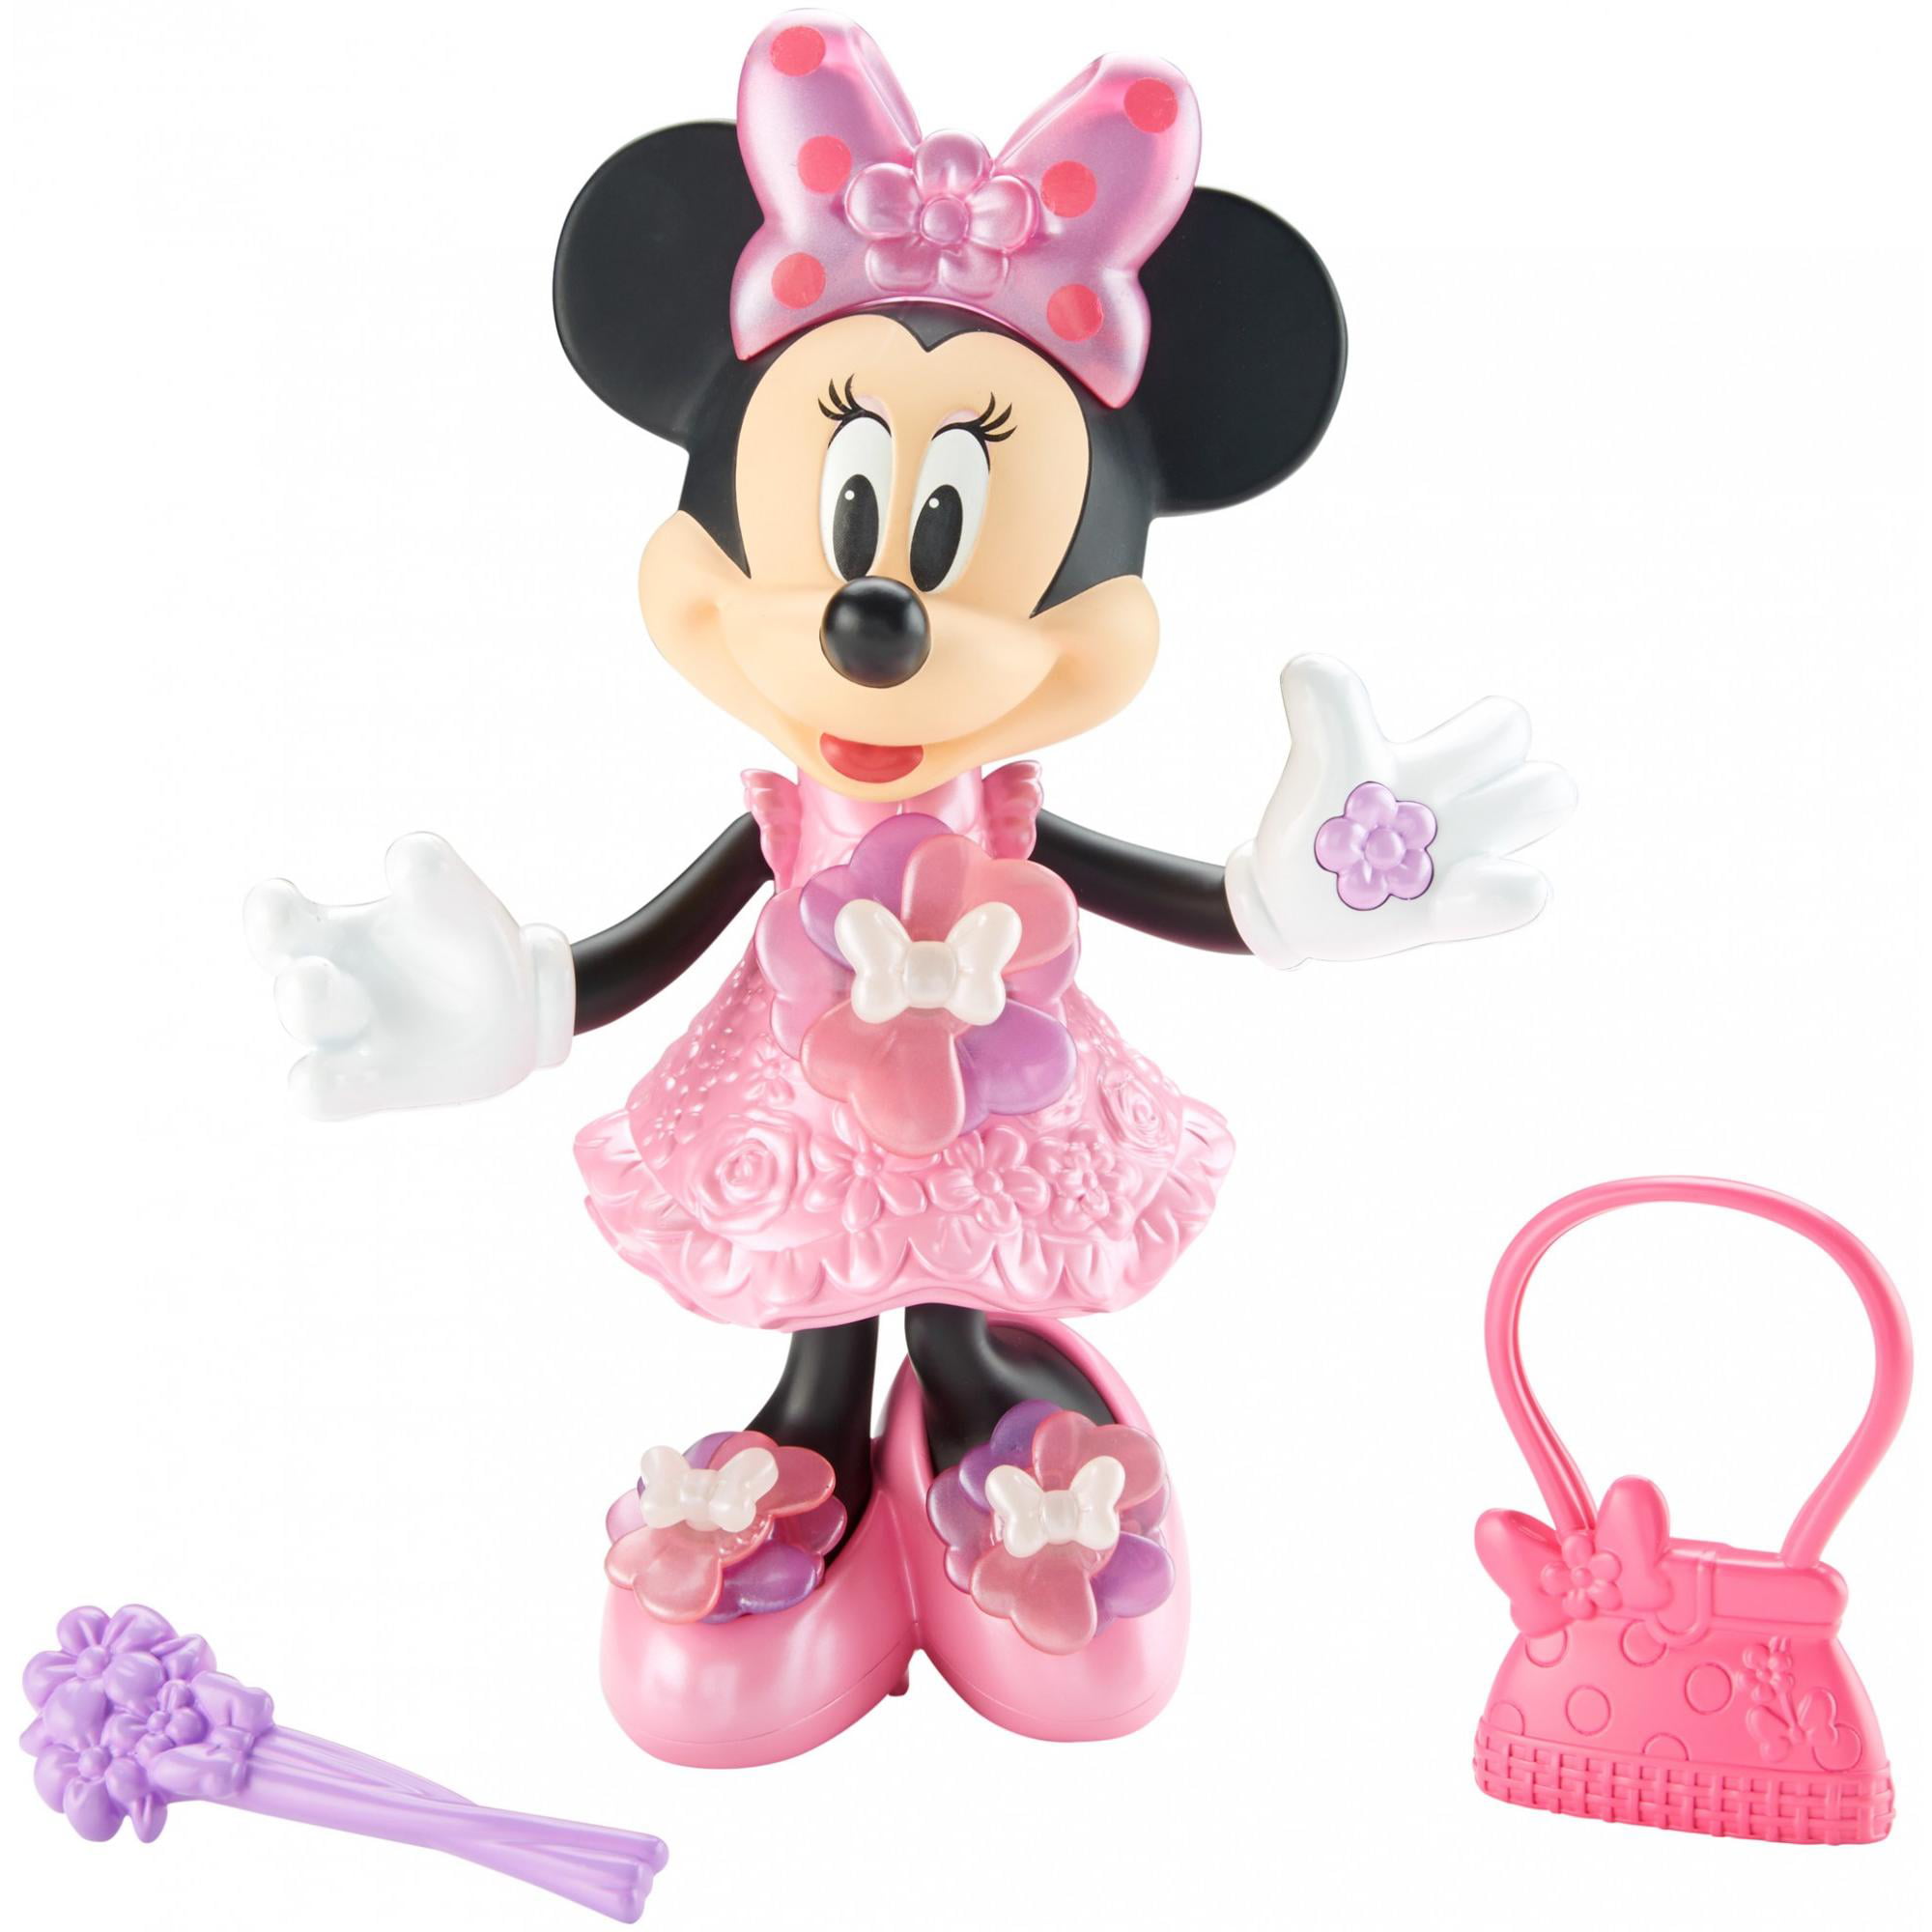 Игрушка минни. Fisher Price Минни Маус. Кукла Минни Маус Дисней. Кукла Disney "Минни. Модница", 14,5 см. Minnie Mouse кукла.